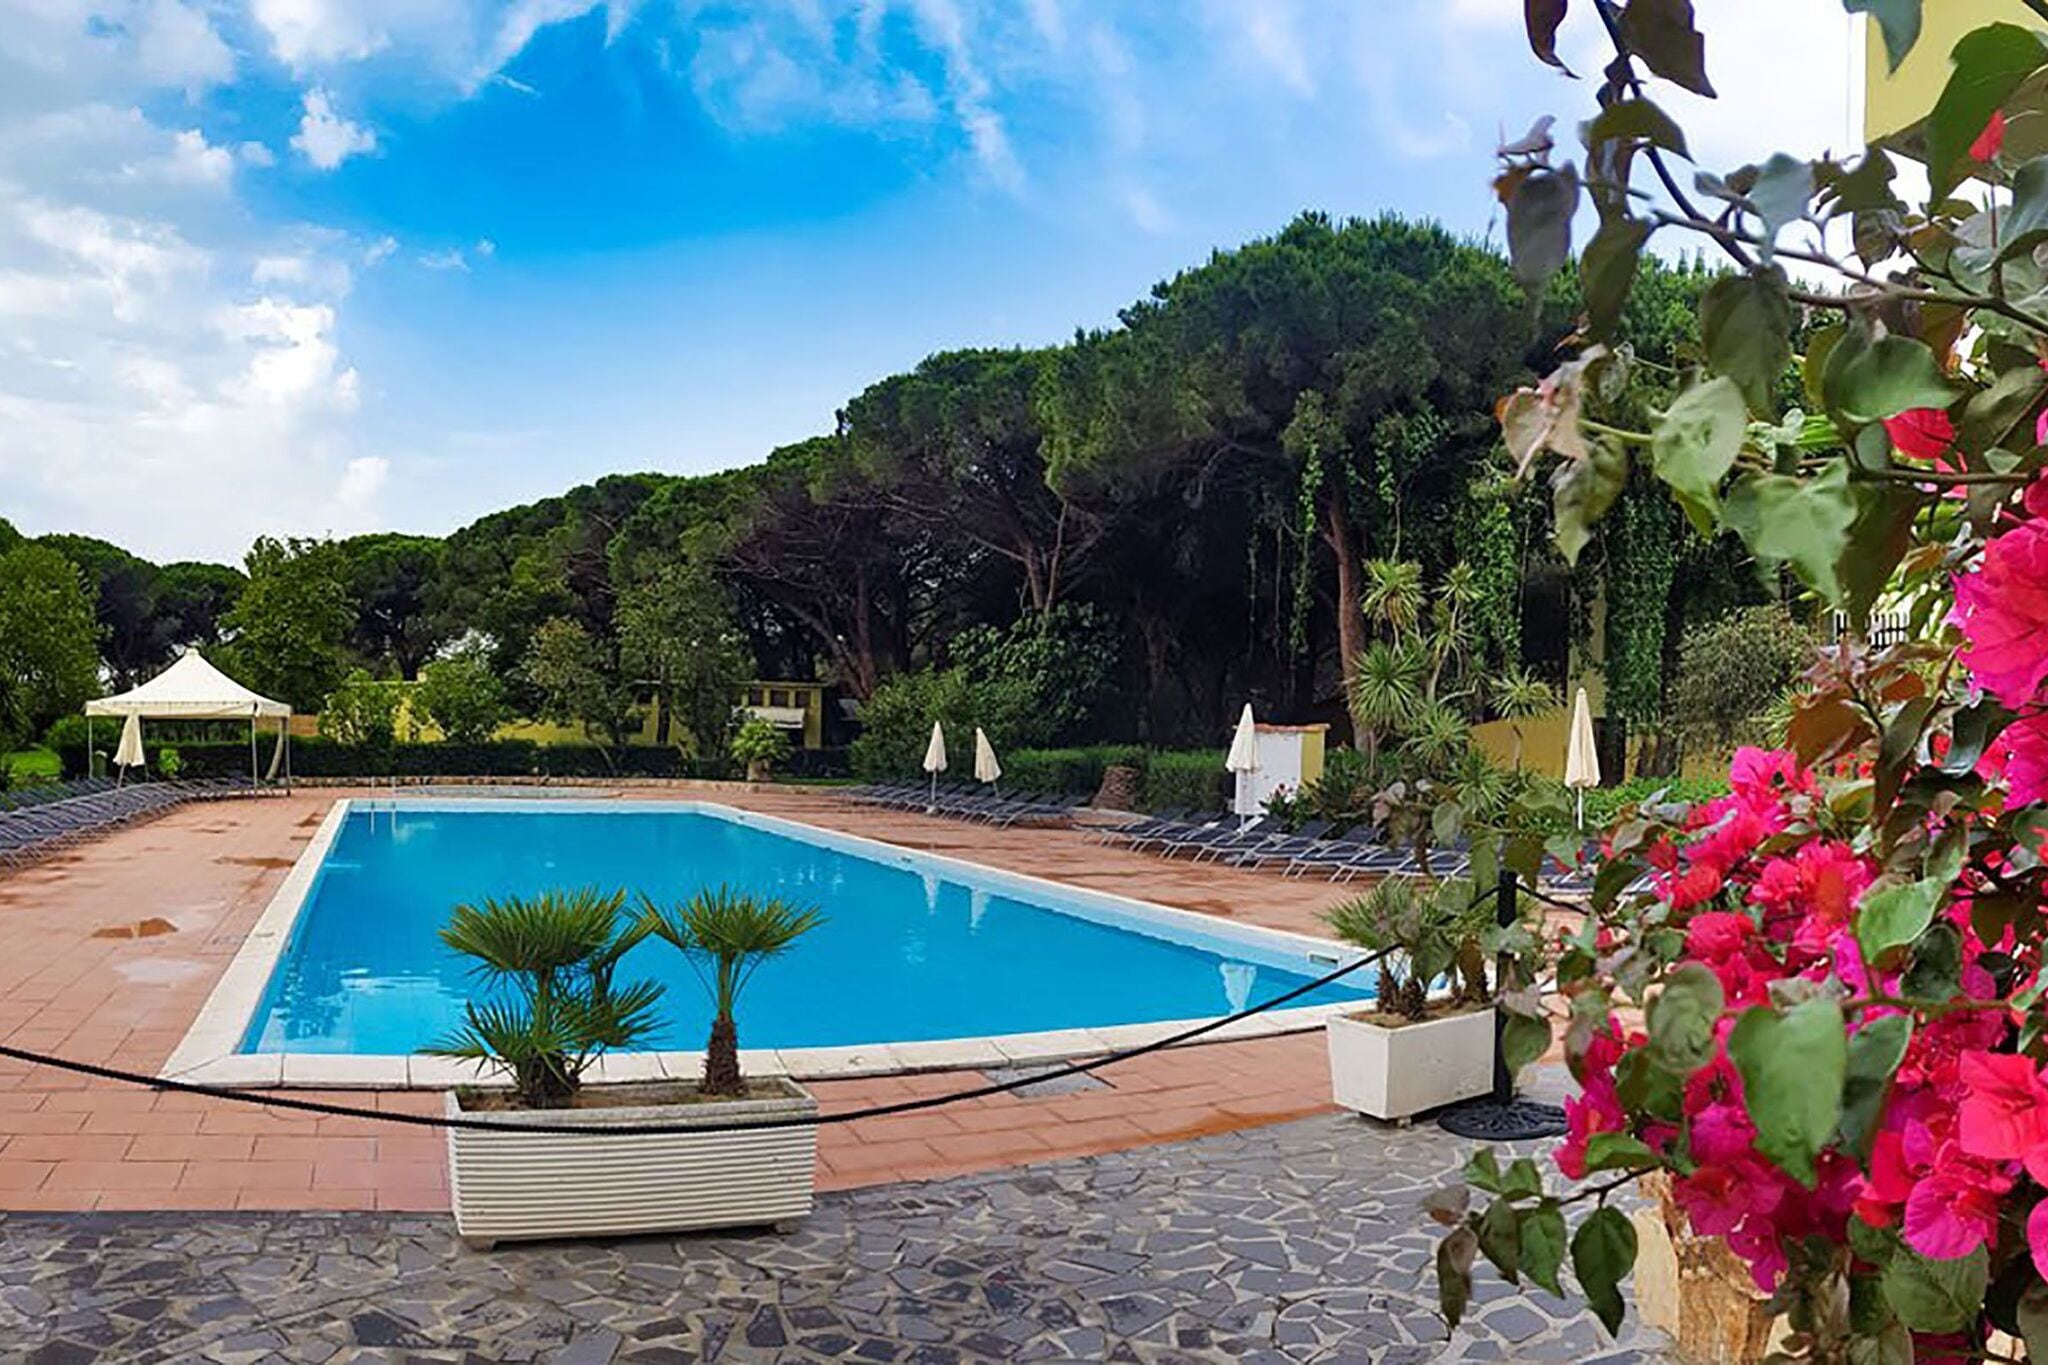 Kleine Villa in Sardinien mit Swimmingpool und Meer in Fußnähe